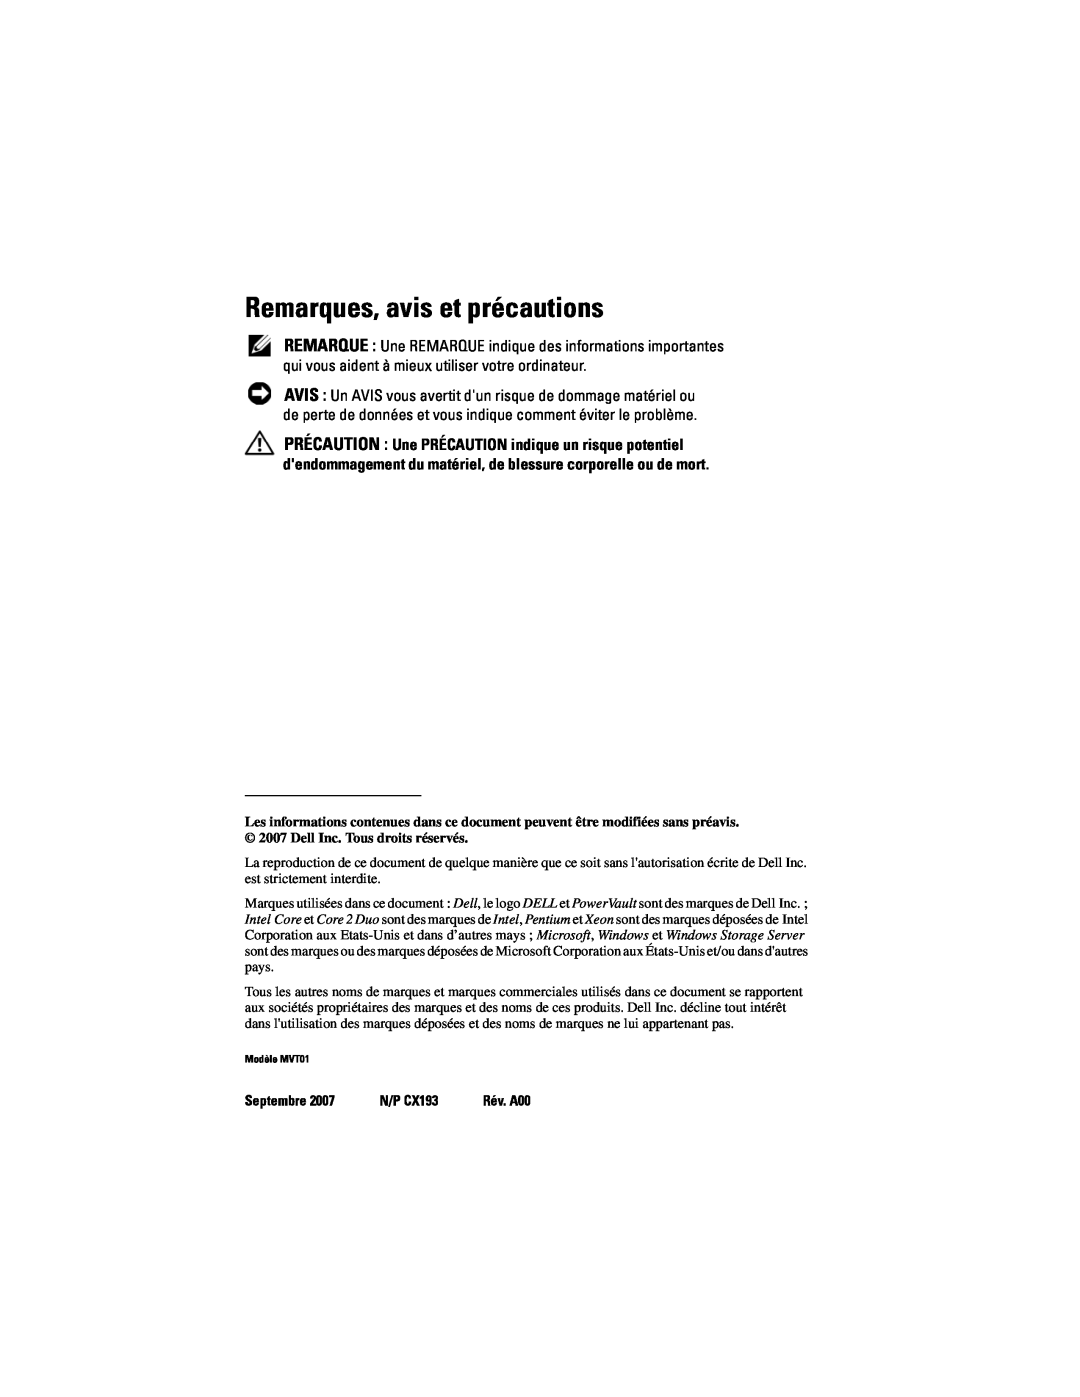 Dell manual Remarques, avis et précautions, Septembre, N/P CX193 